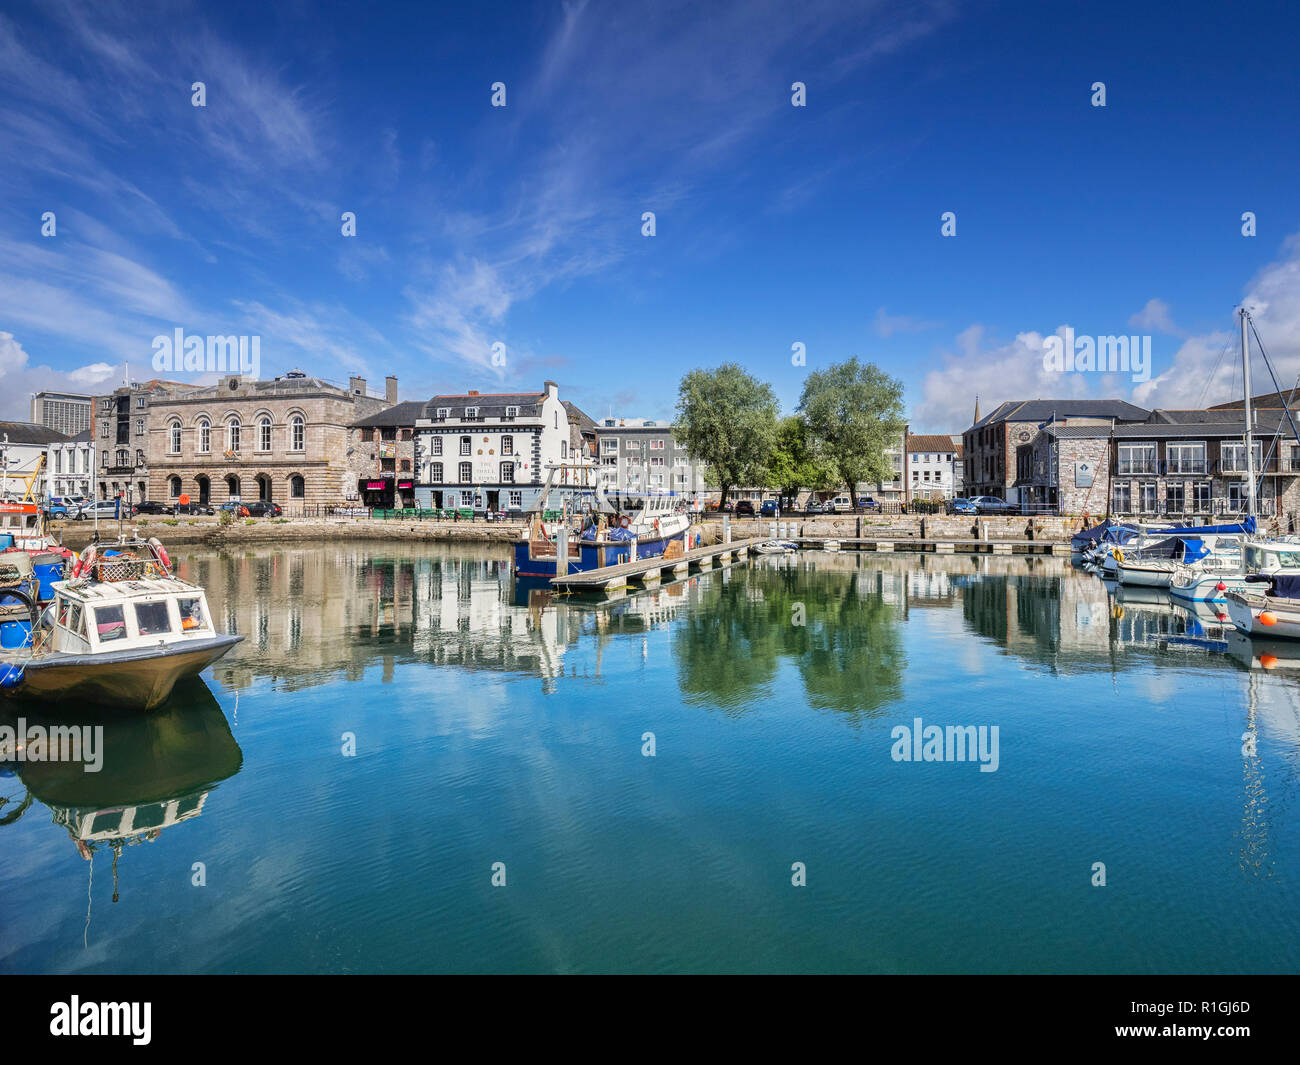 2 Giugno 2018: Plymouth, Devon, Regno Unito - Barbican con le tre corone public house che riflette nell'acqua. Foto Stock